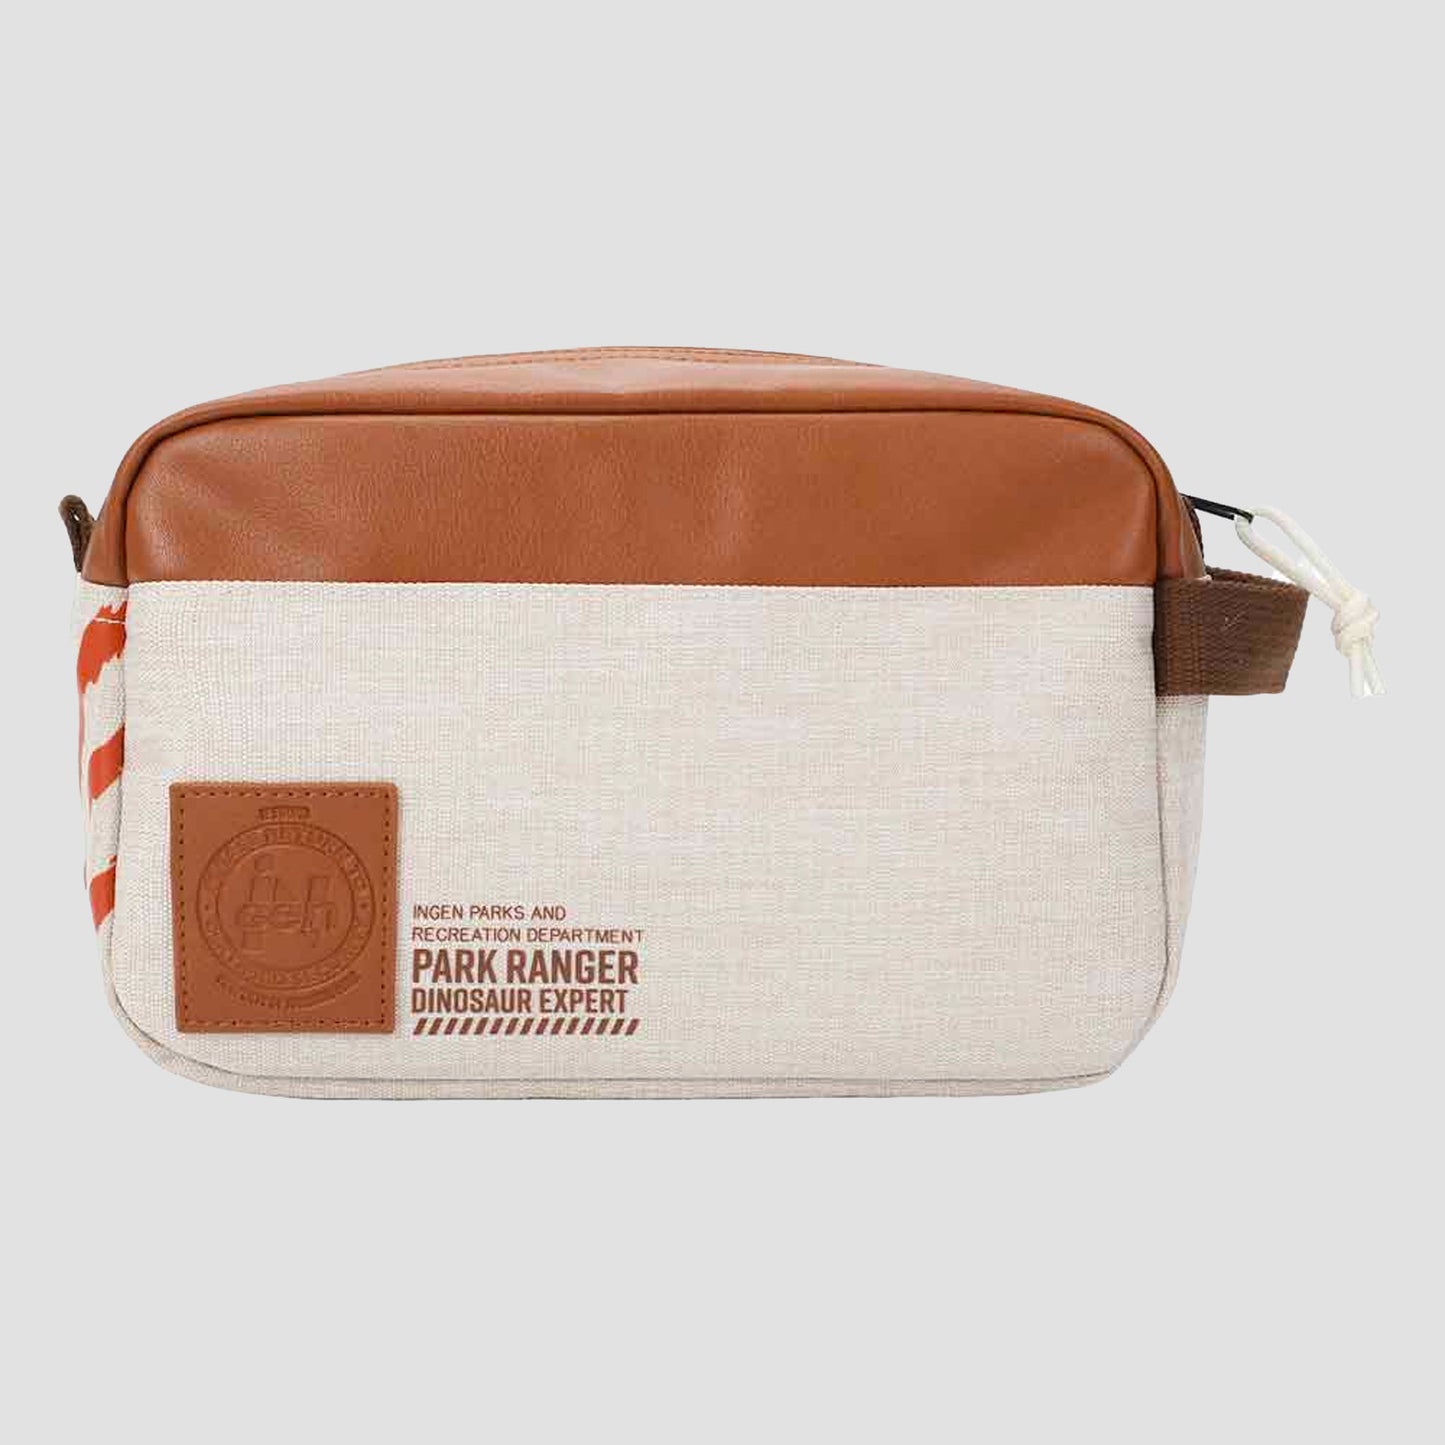 Park Ranger (Jurassic Park) Travel Cosmetic Bag